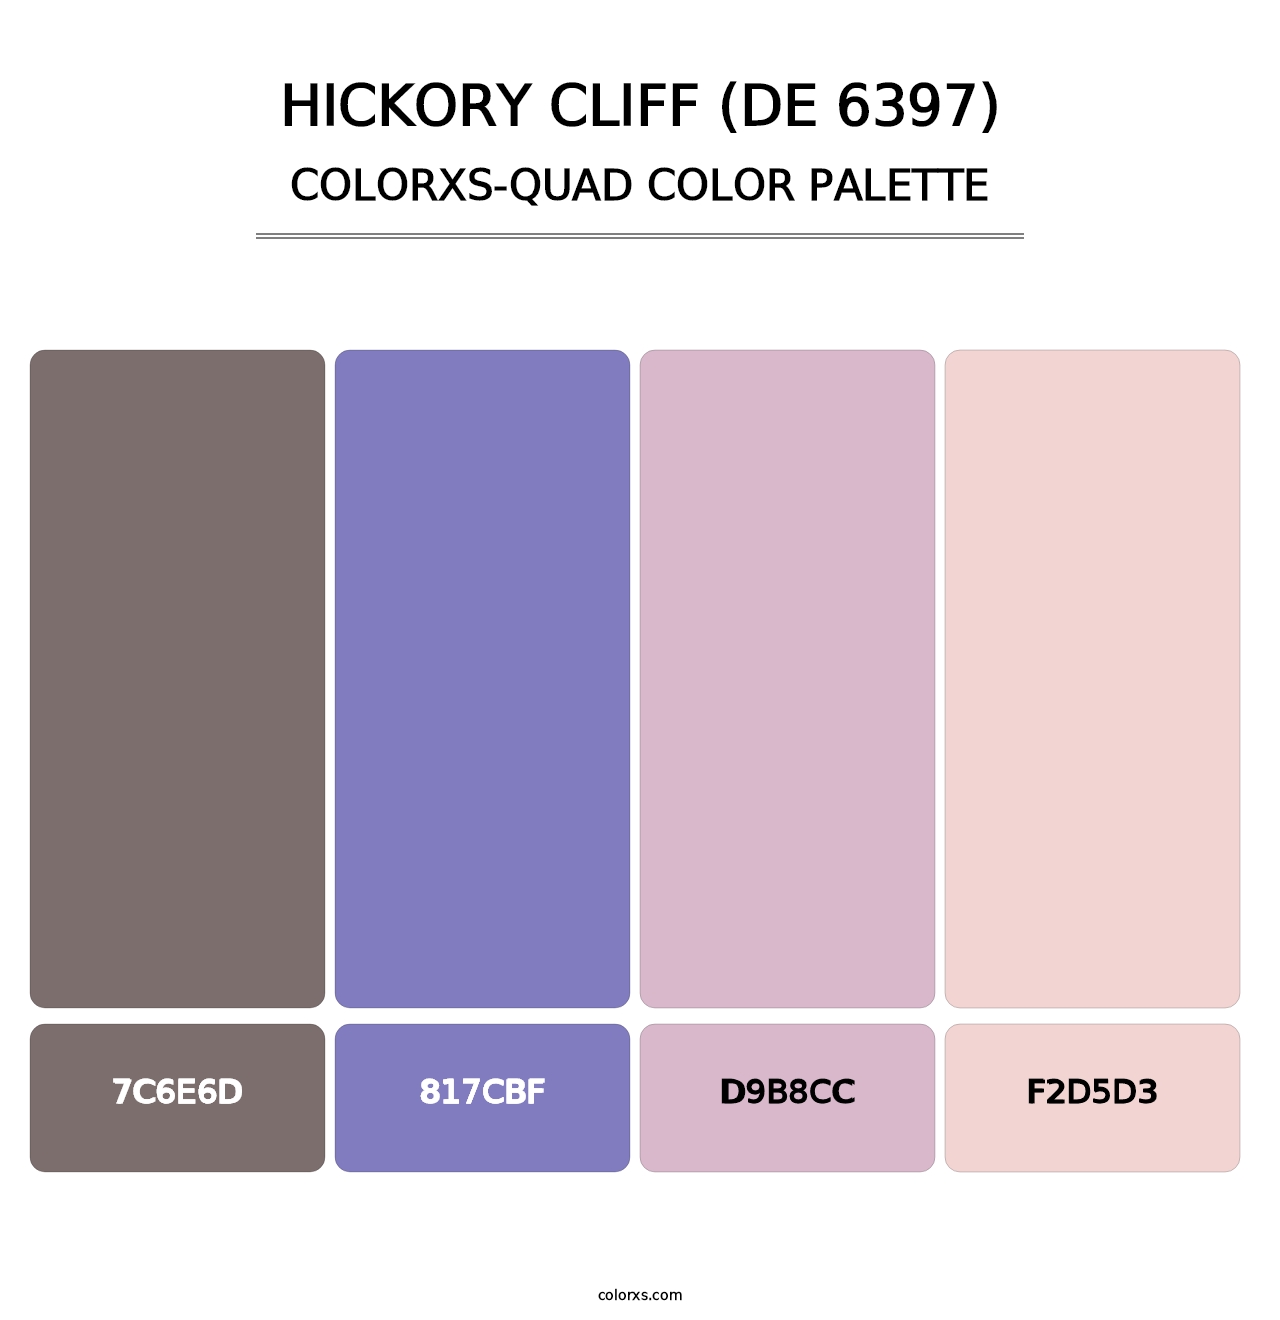 Hickory Cliff (DE 6397) - Colorxs Quad Palette